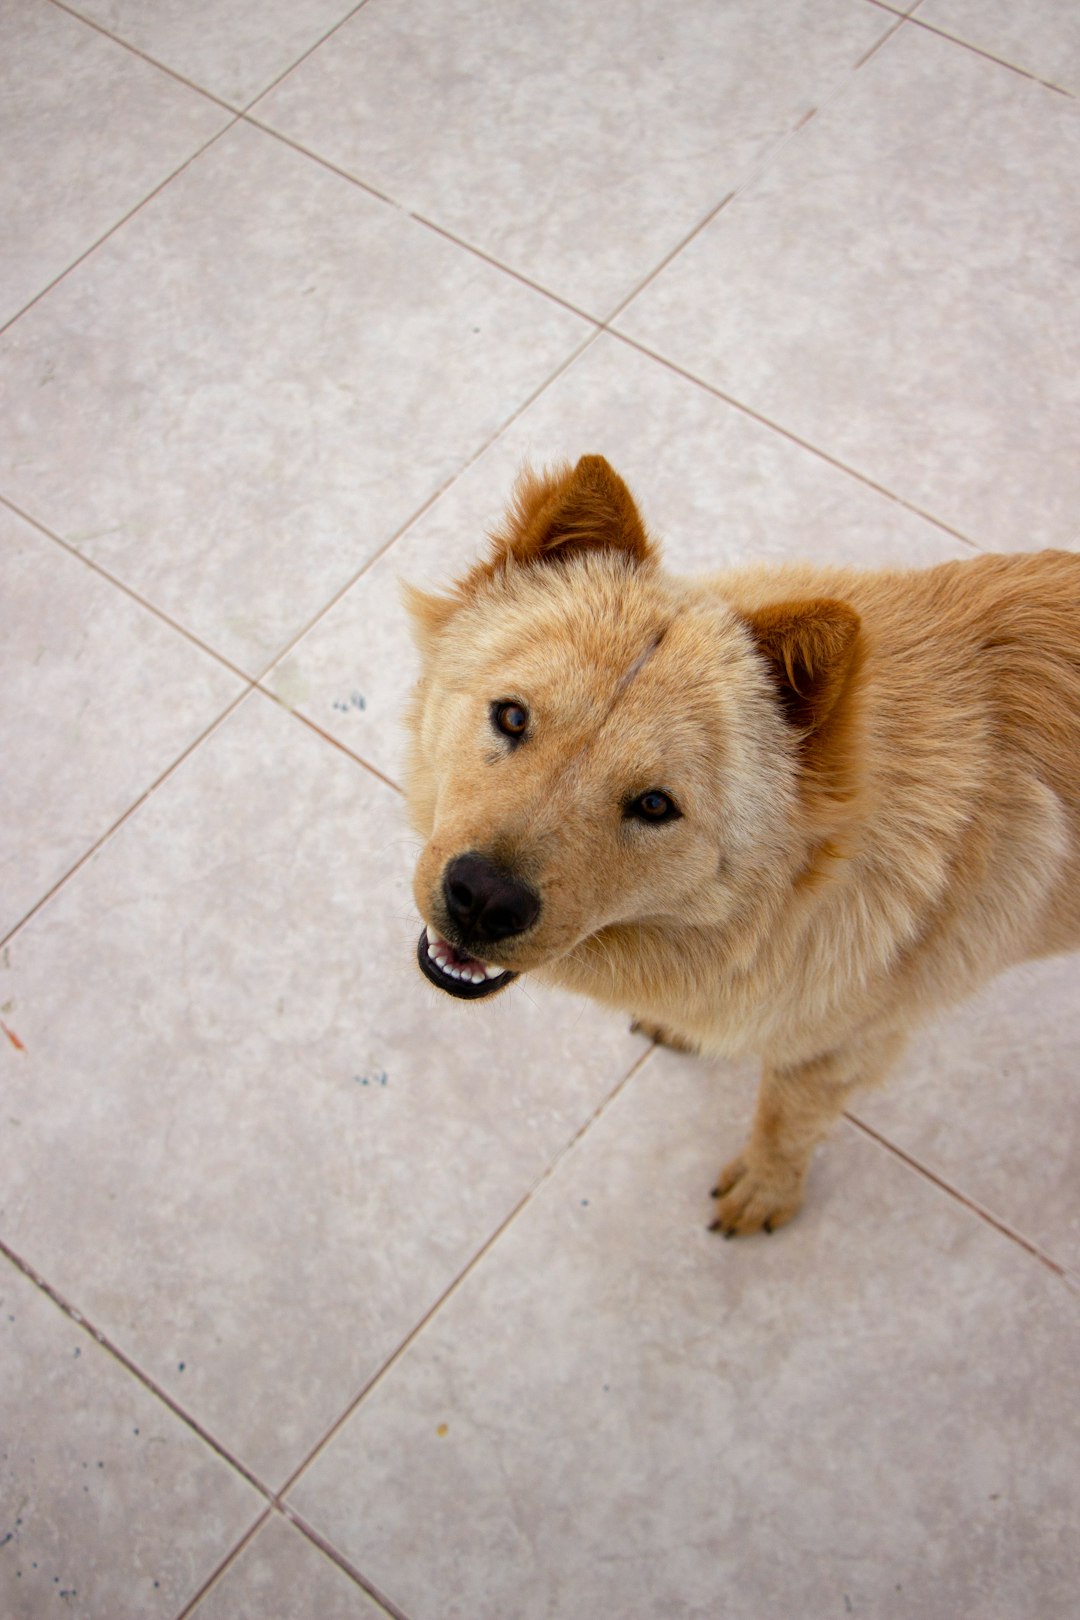 brown short coated dog on white ceramic floor tiles